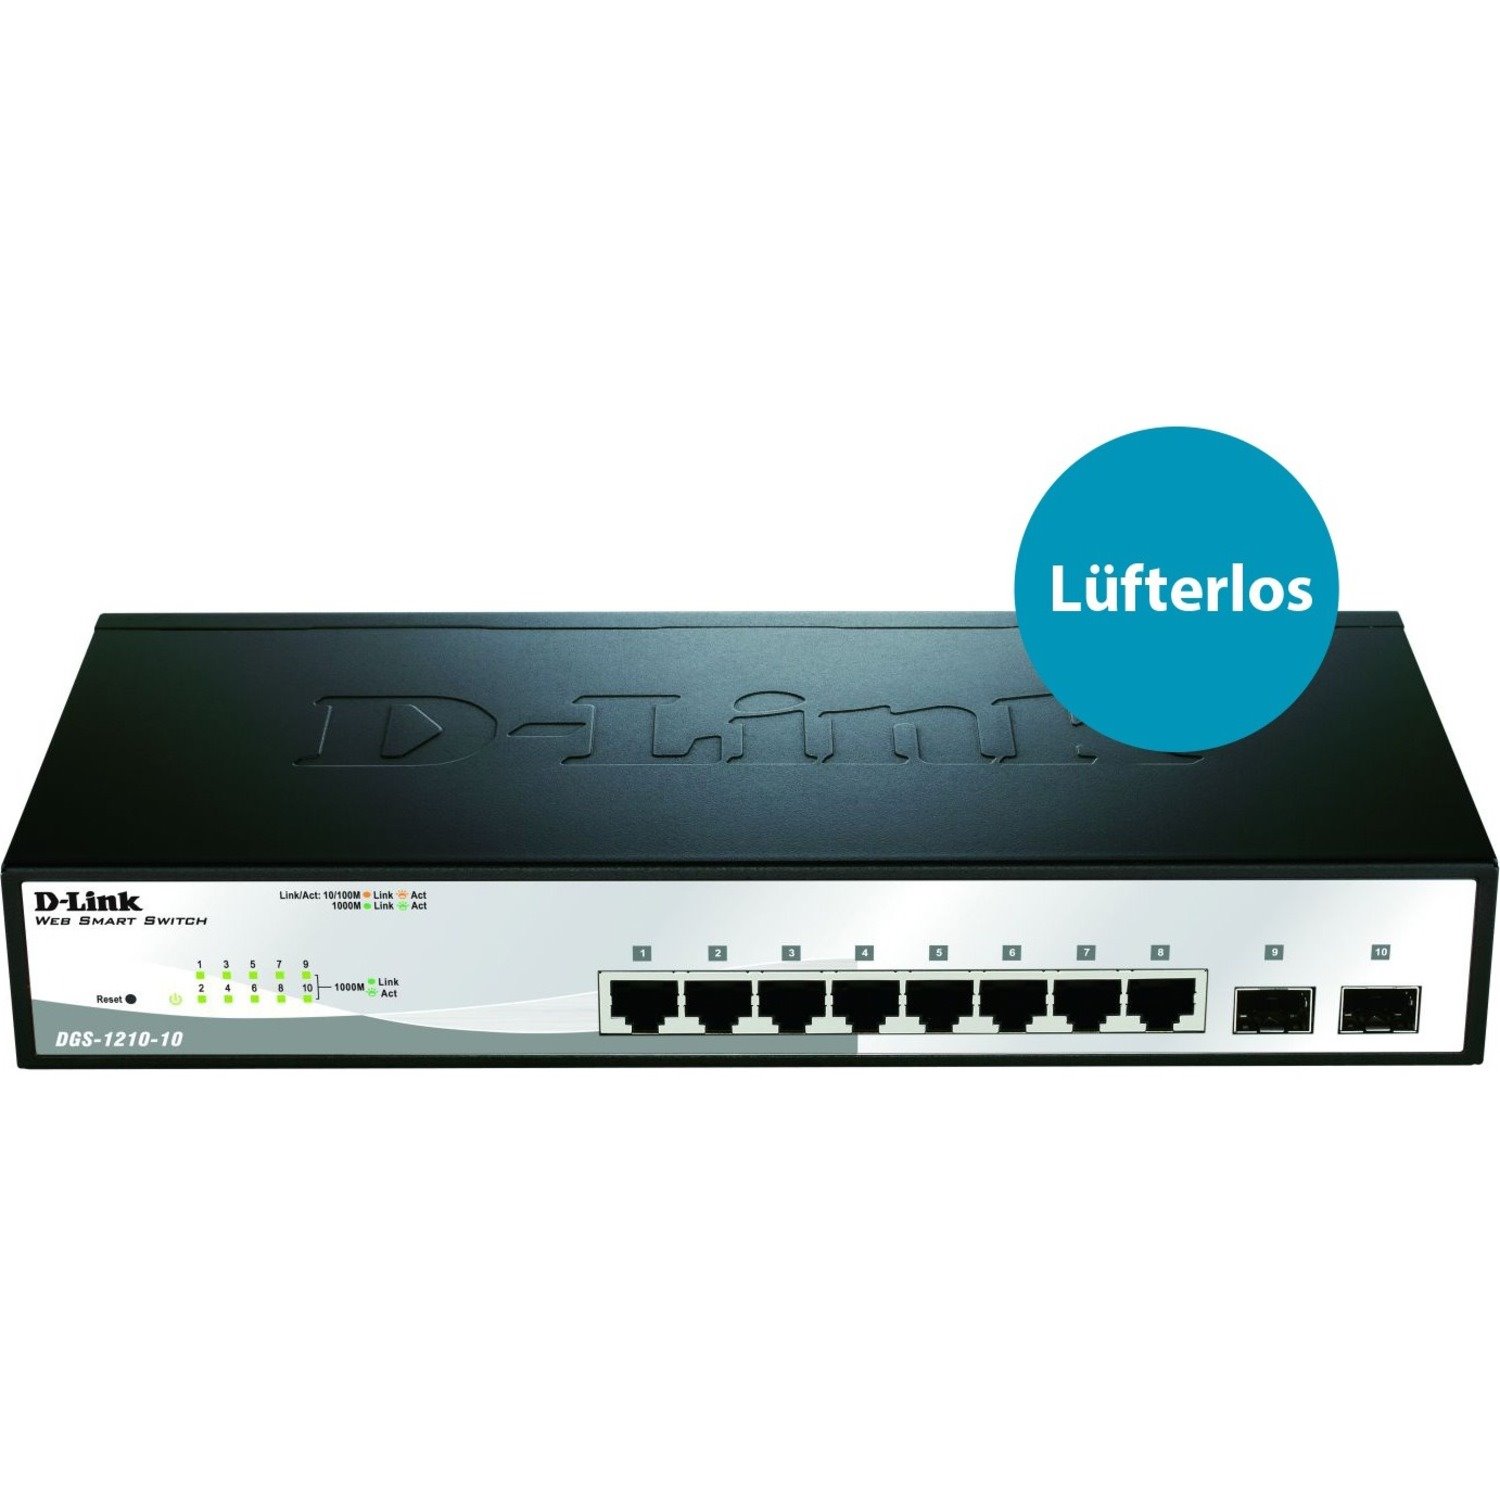 D-Link WebSmart DGS-1210 DGS-1210-10 8 Ports Manageable Ethernet Switch - Gigabit Ethernet - 10/100/1000Base-T, 1000Base-X